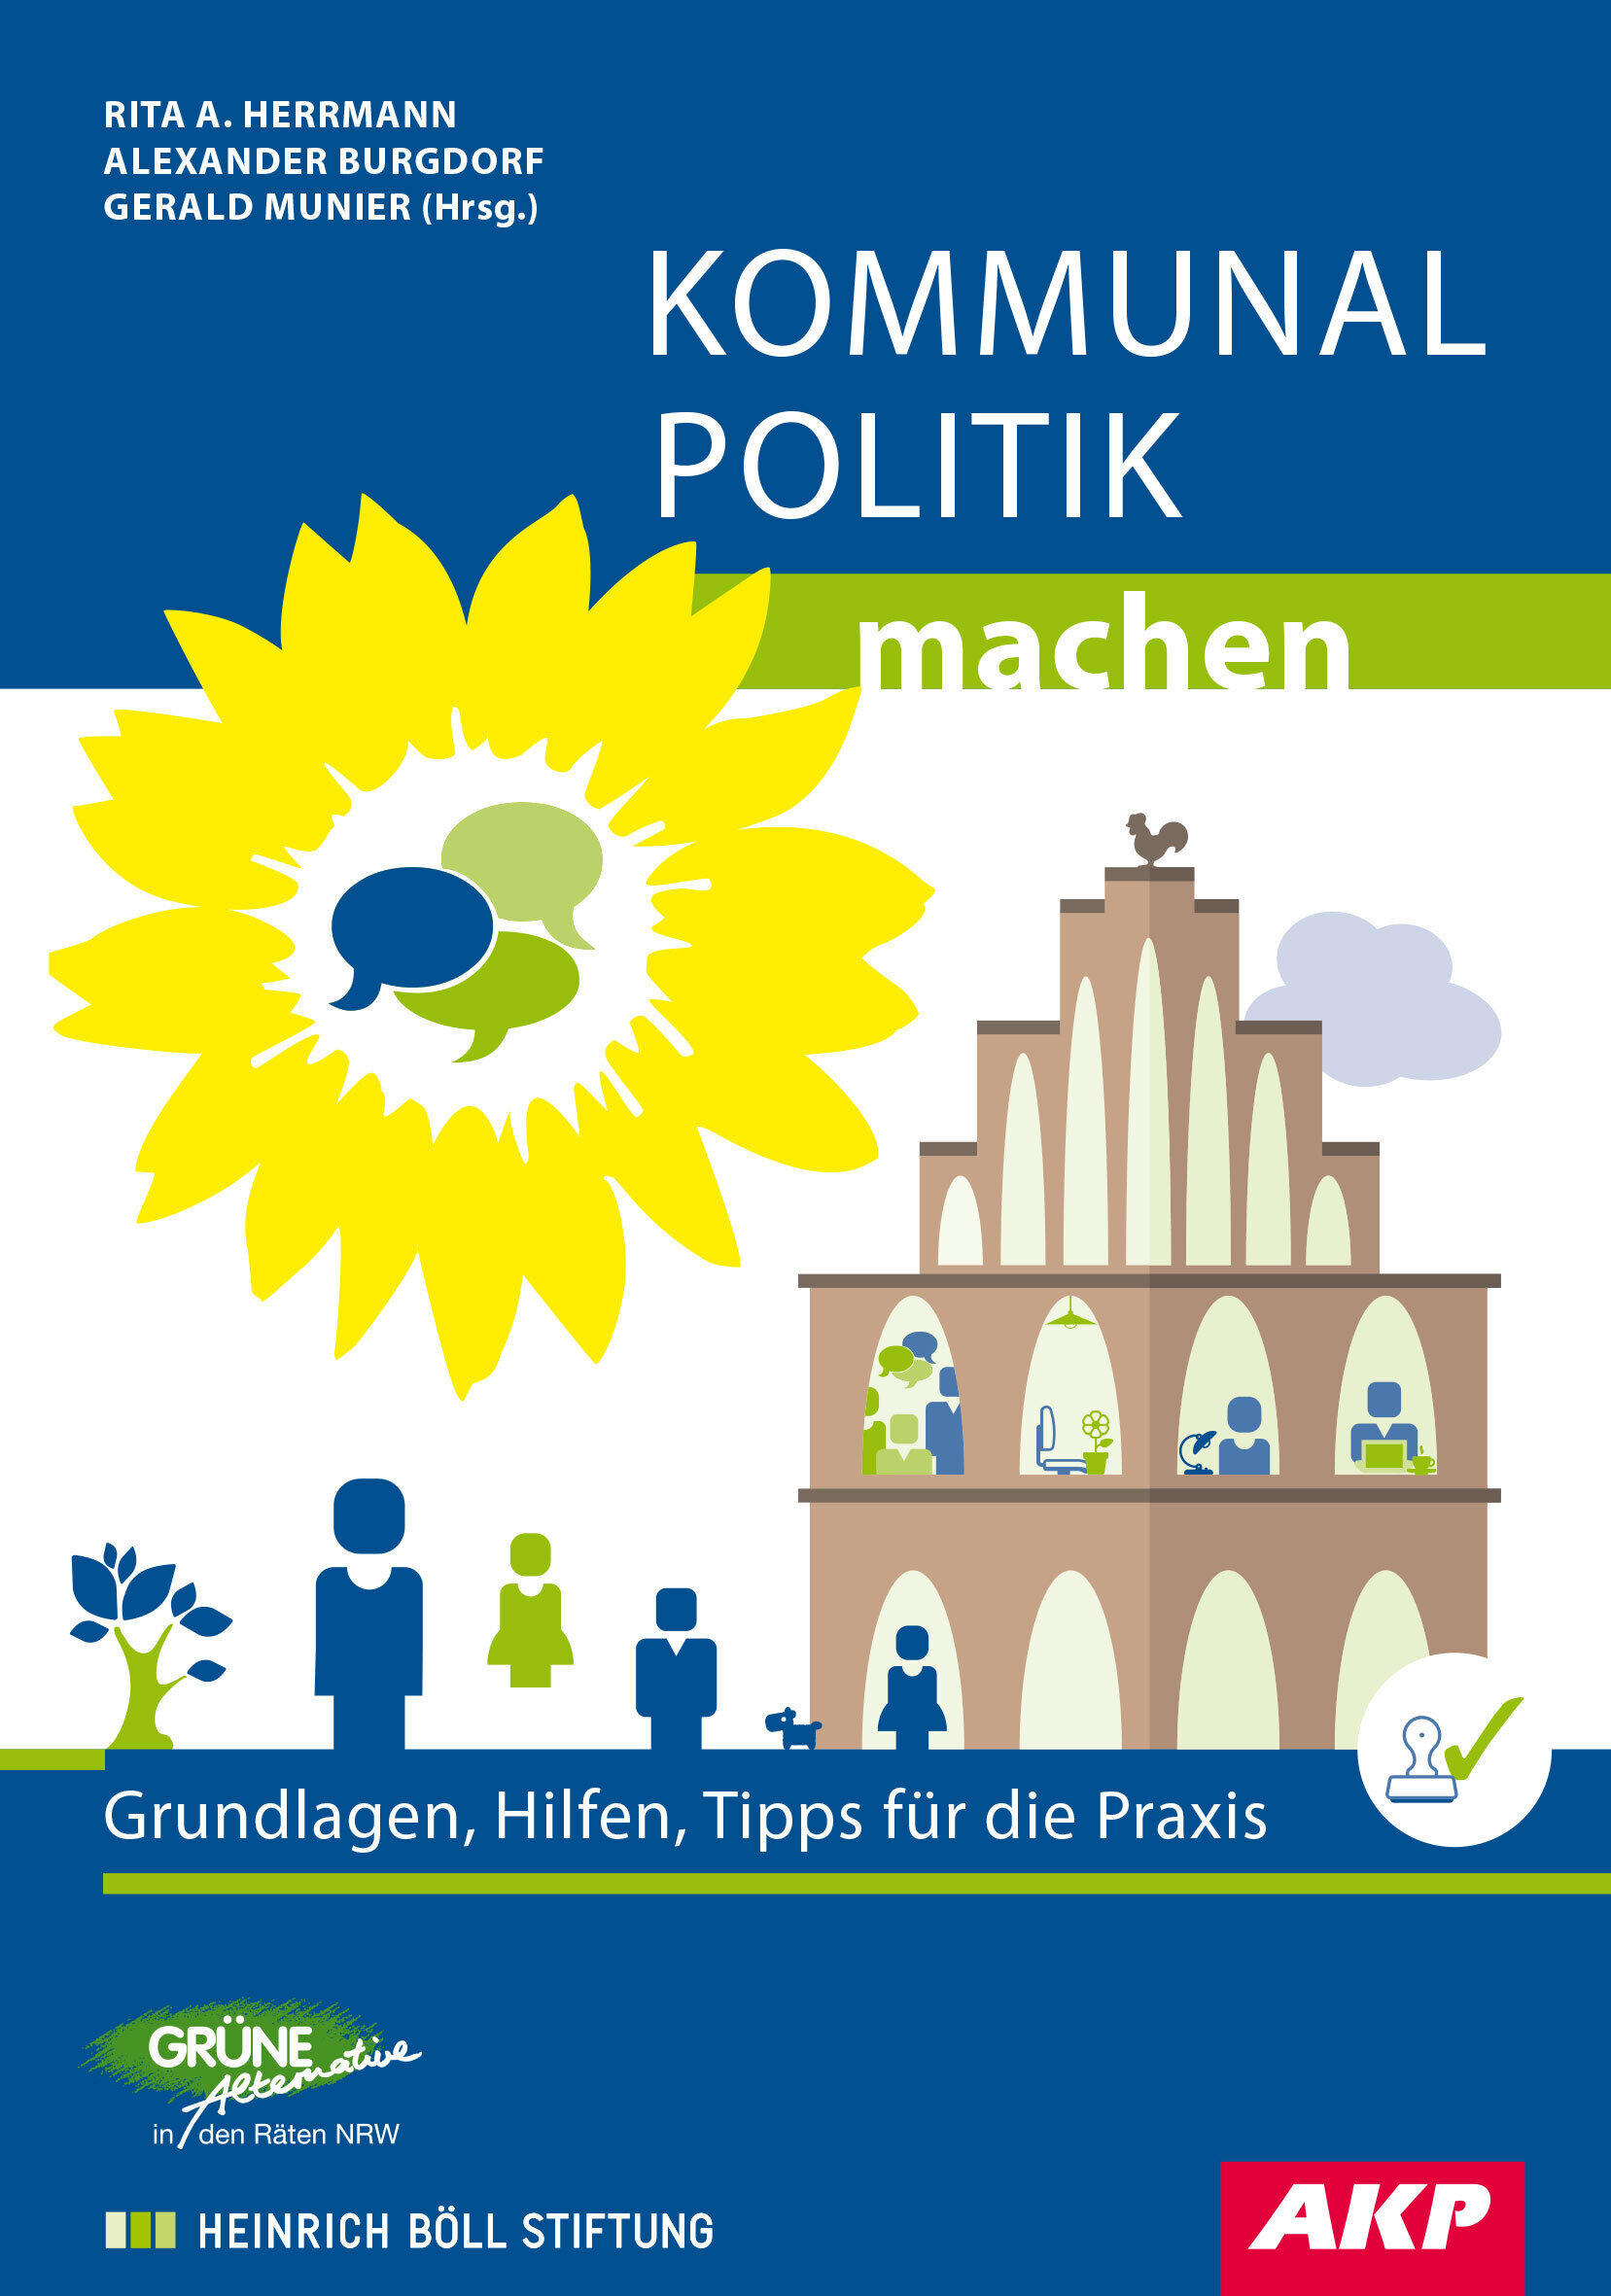 Cover mit Rathaus und Sonnenblume